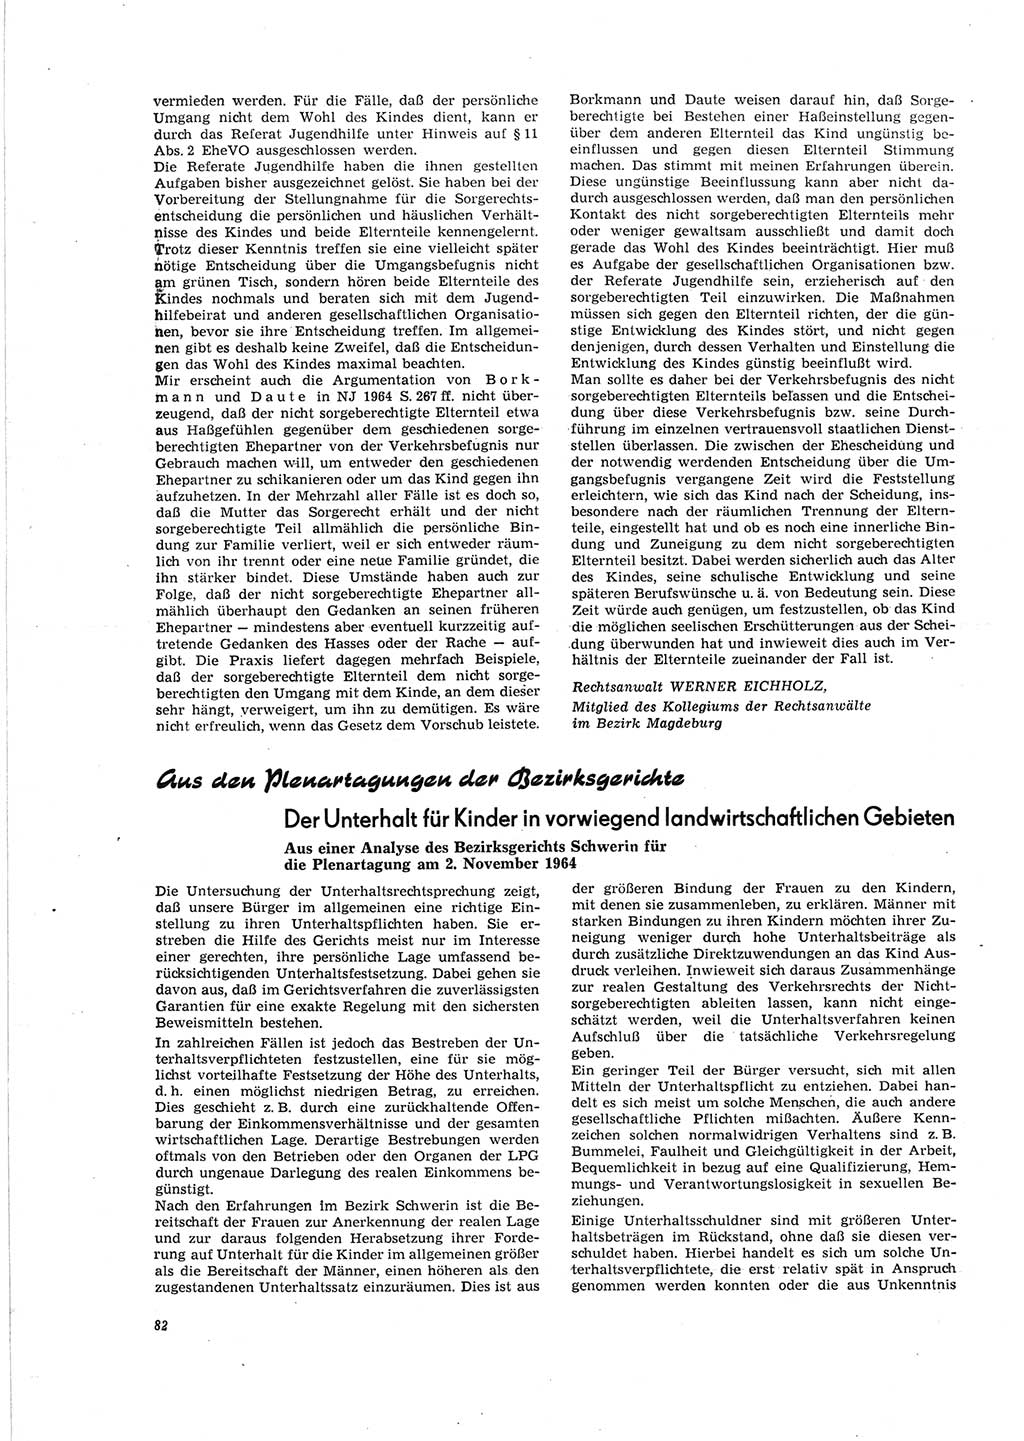 Neue Justiz (NJ), Zeitschrift für Recht und Rechtswissenschaft [Deutsche Demokratische Republik (DDR)], 19. Jahrgang 1965, Seite 82 (NJ DDR 1965, S. 82)